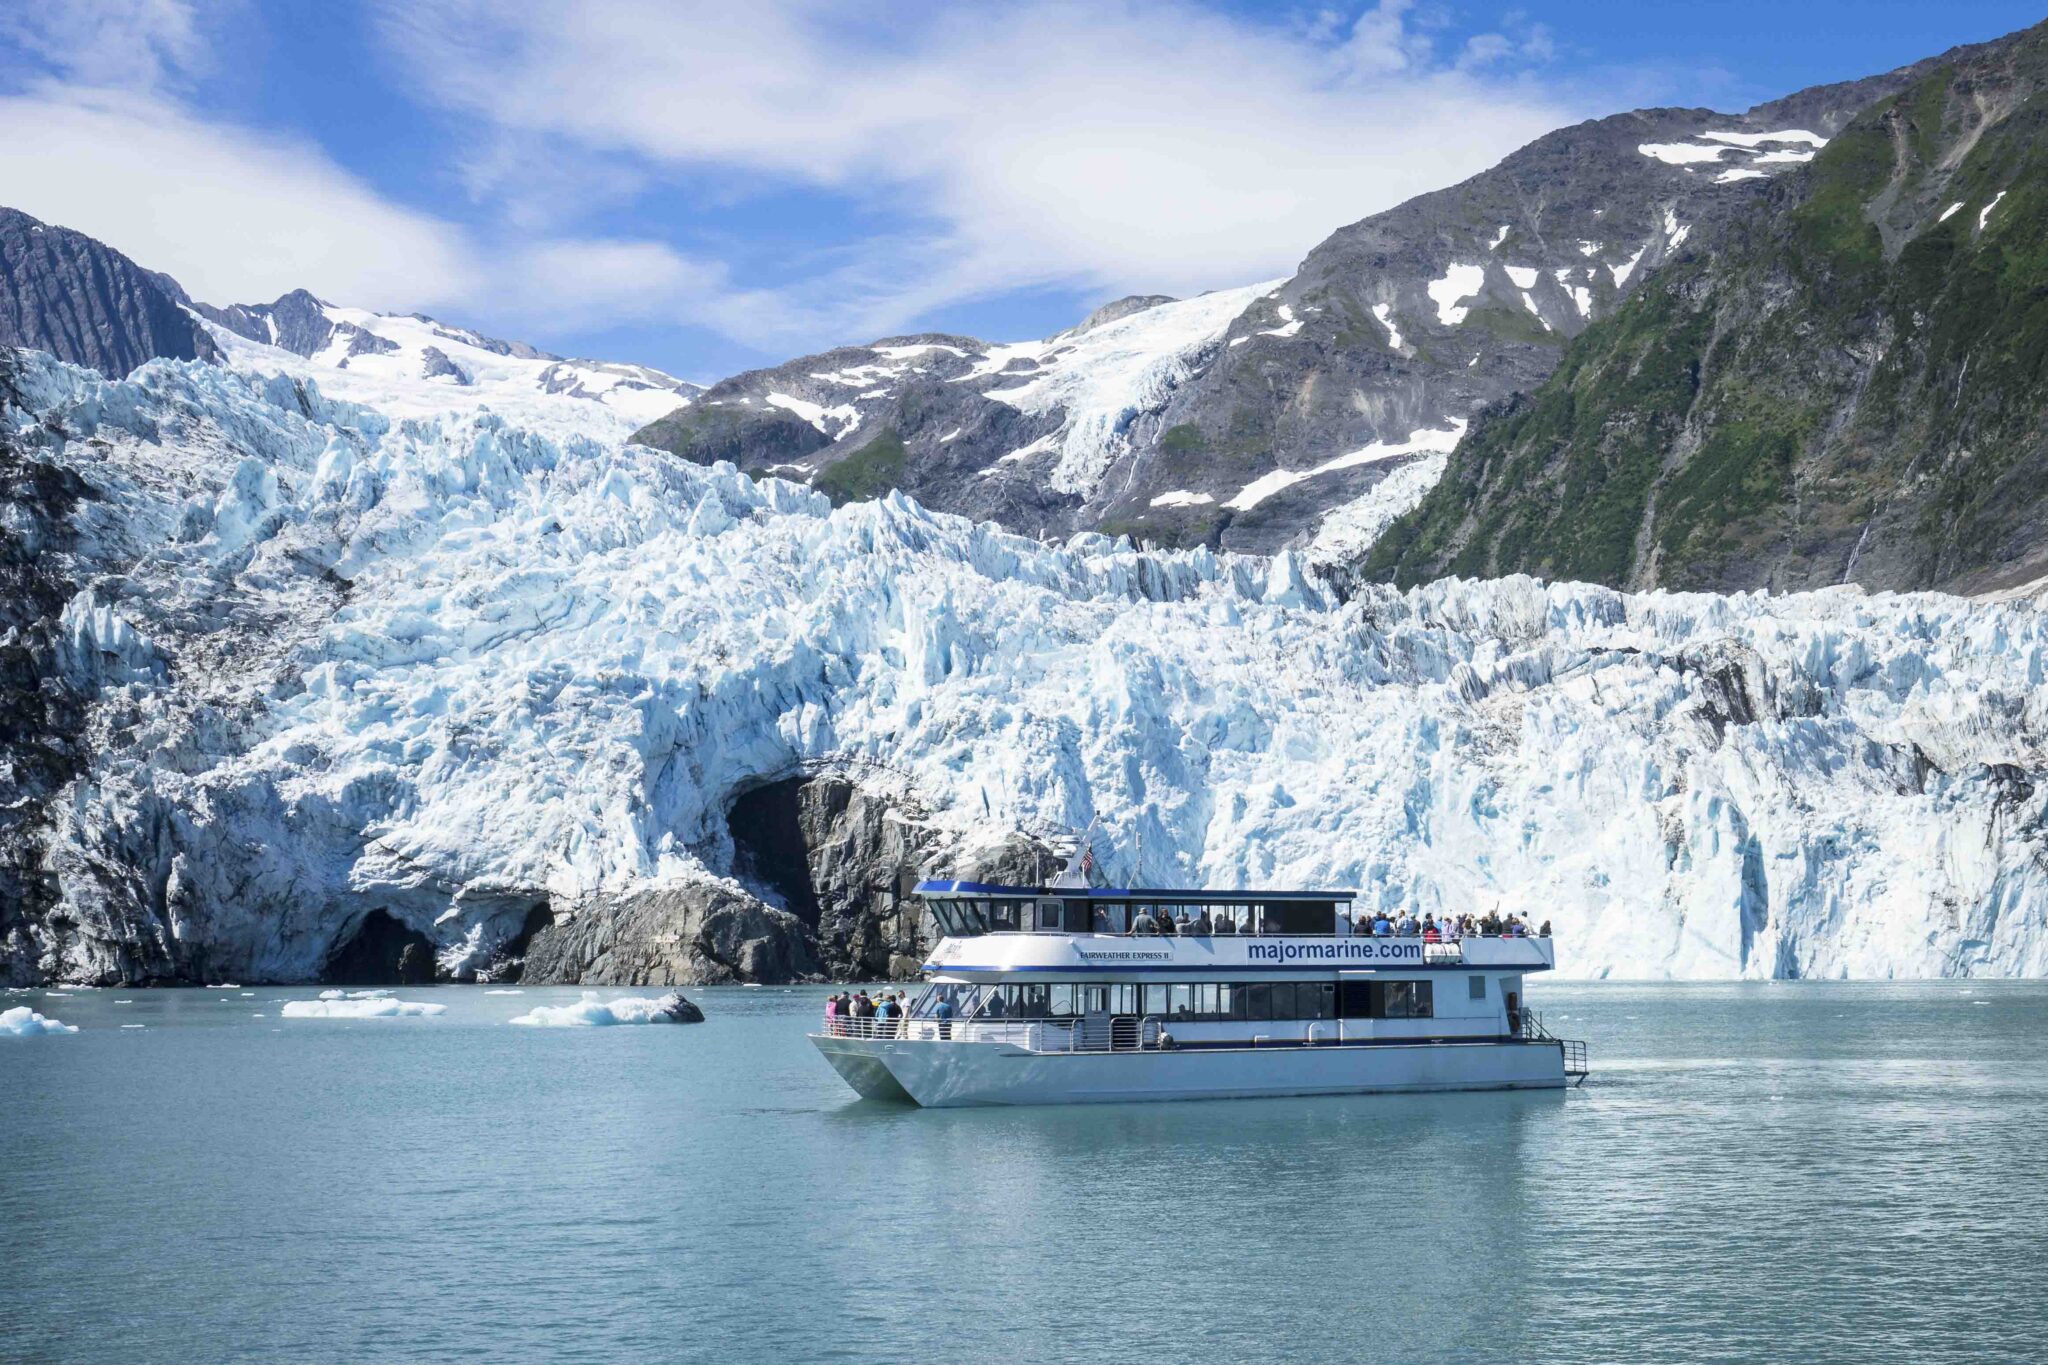 27 glacier cruise